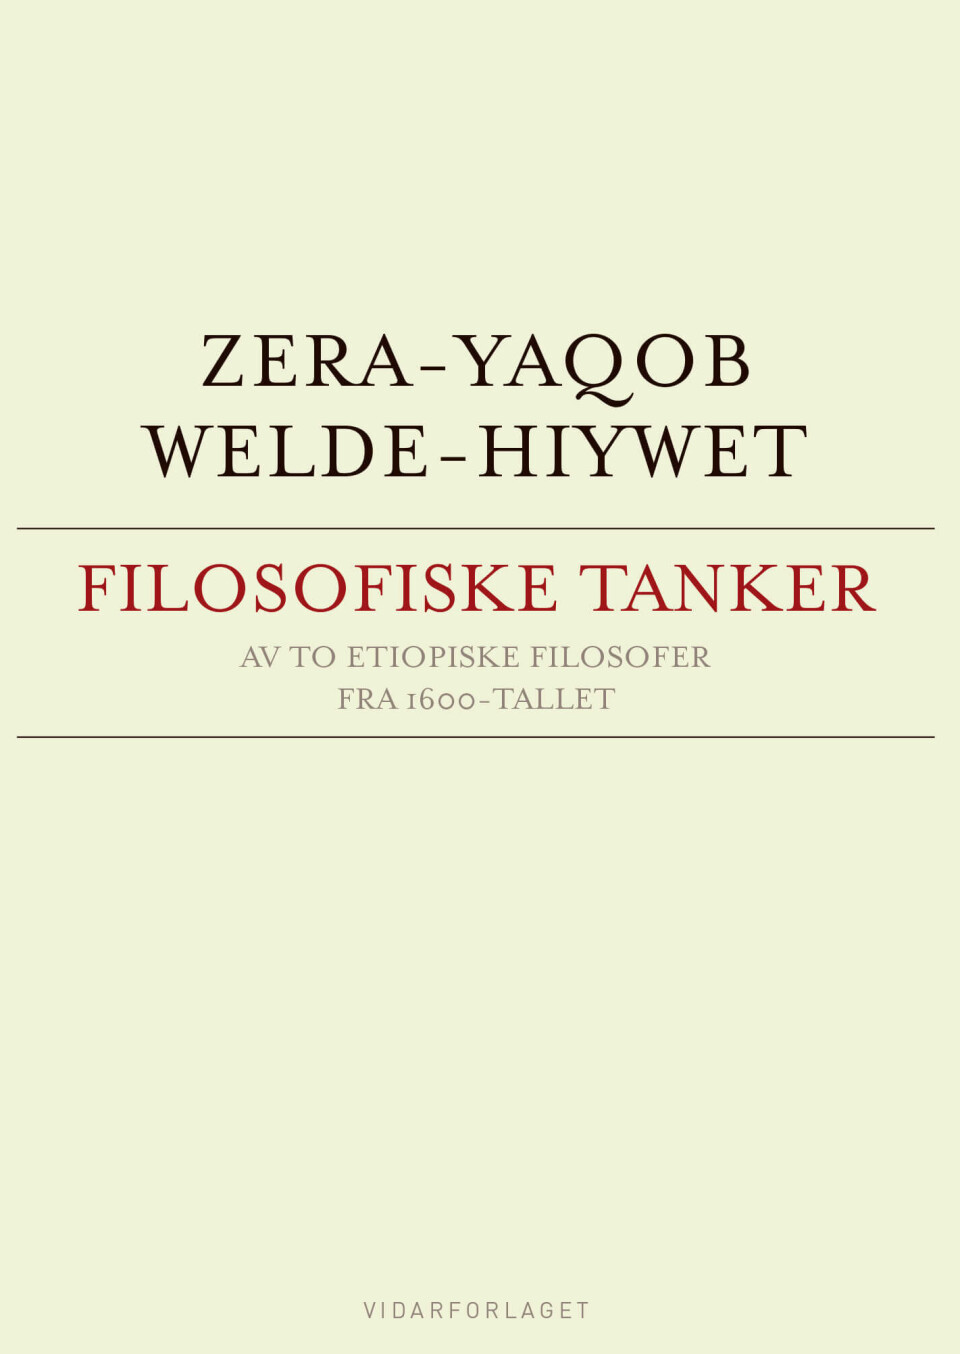 Zera-Yaqob og Welde-Hiywet: Filosofiske tanker av to etiopiske filosofer fra 1600-tallet, oversatt av Reidult Molvær. Vidarforlaget, 2016.